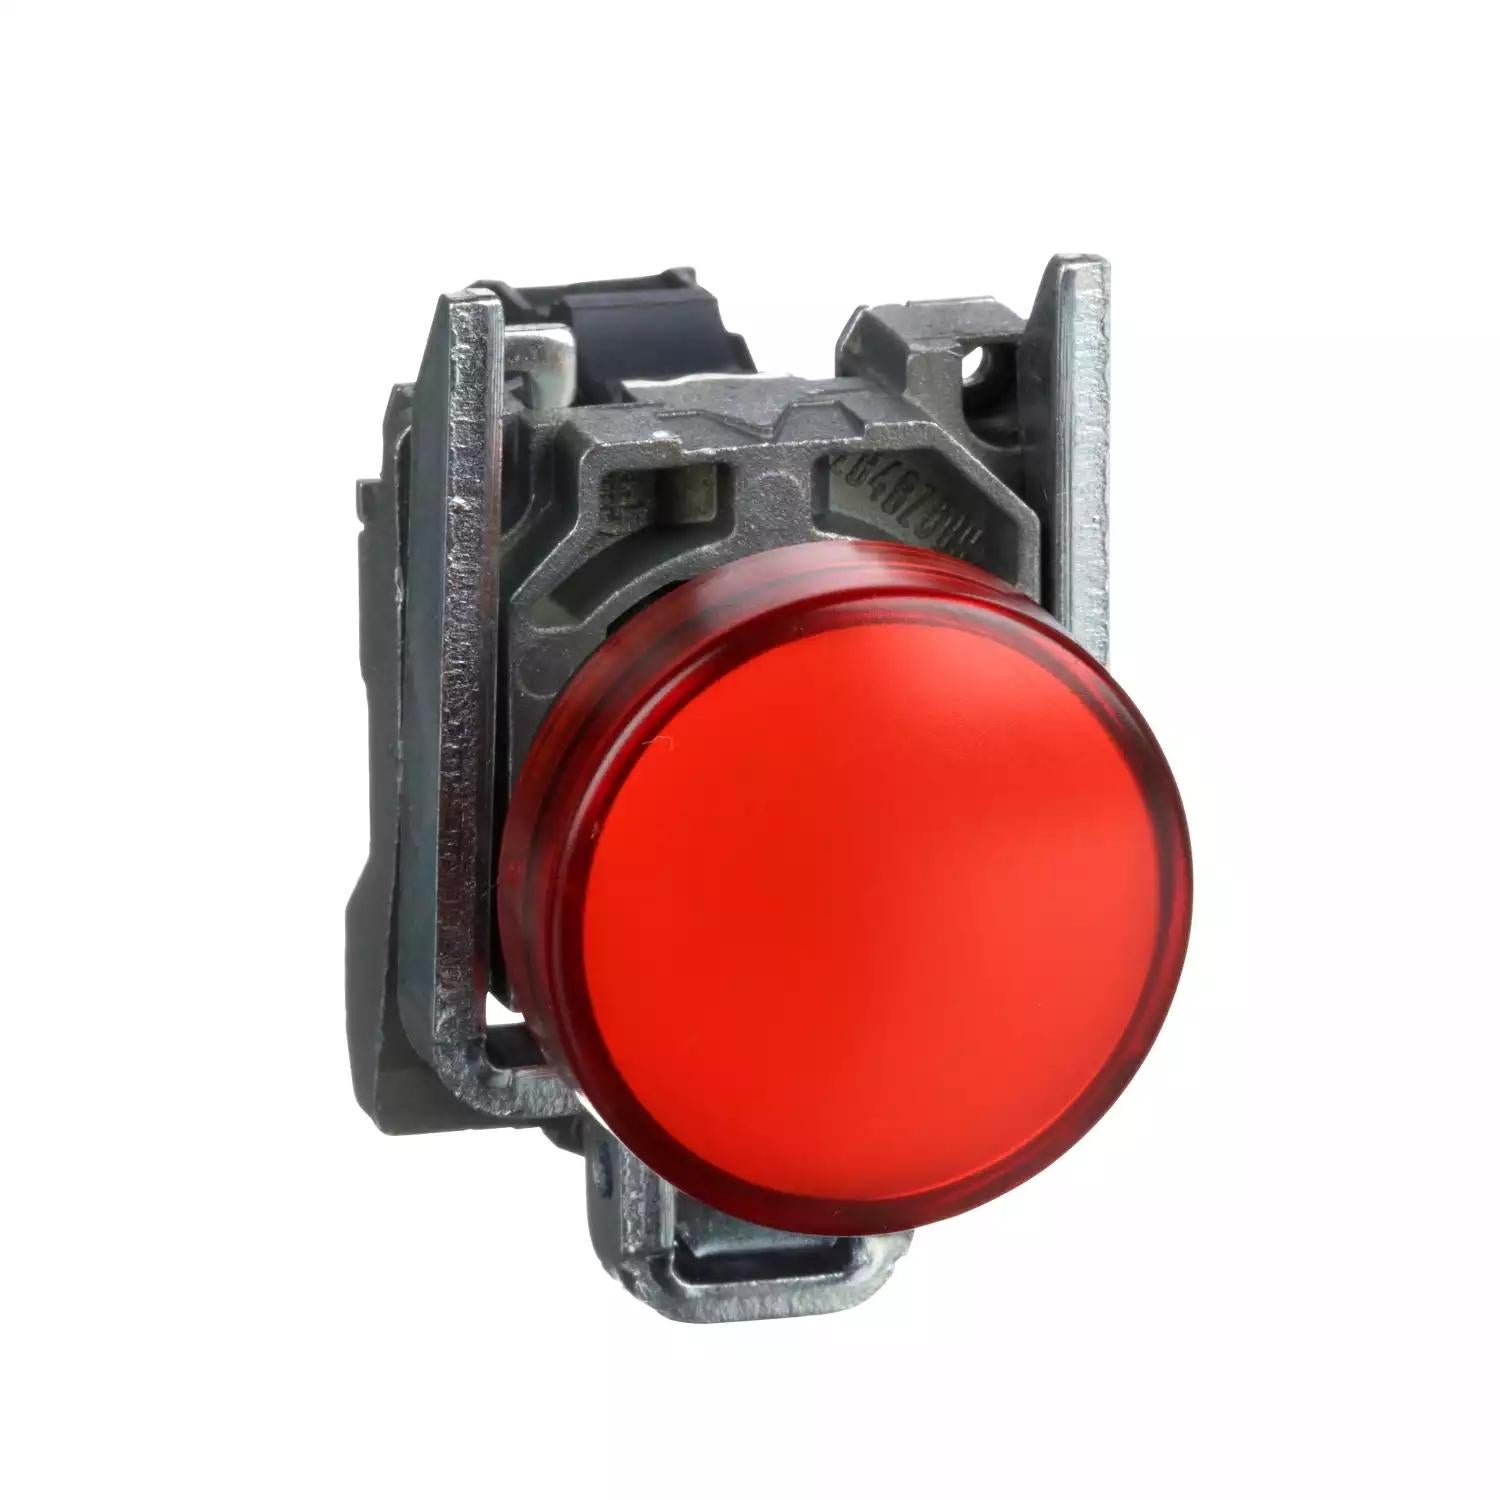 Harmony XB4, Pilot light, metal, red, Ø22, plain lens with integral LED, 24 V AC/DC